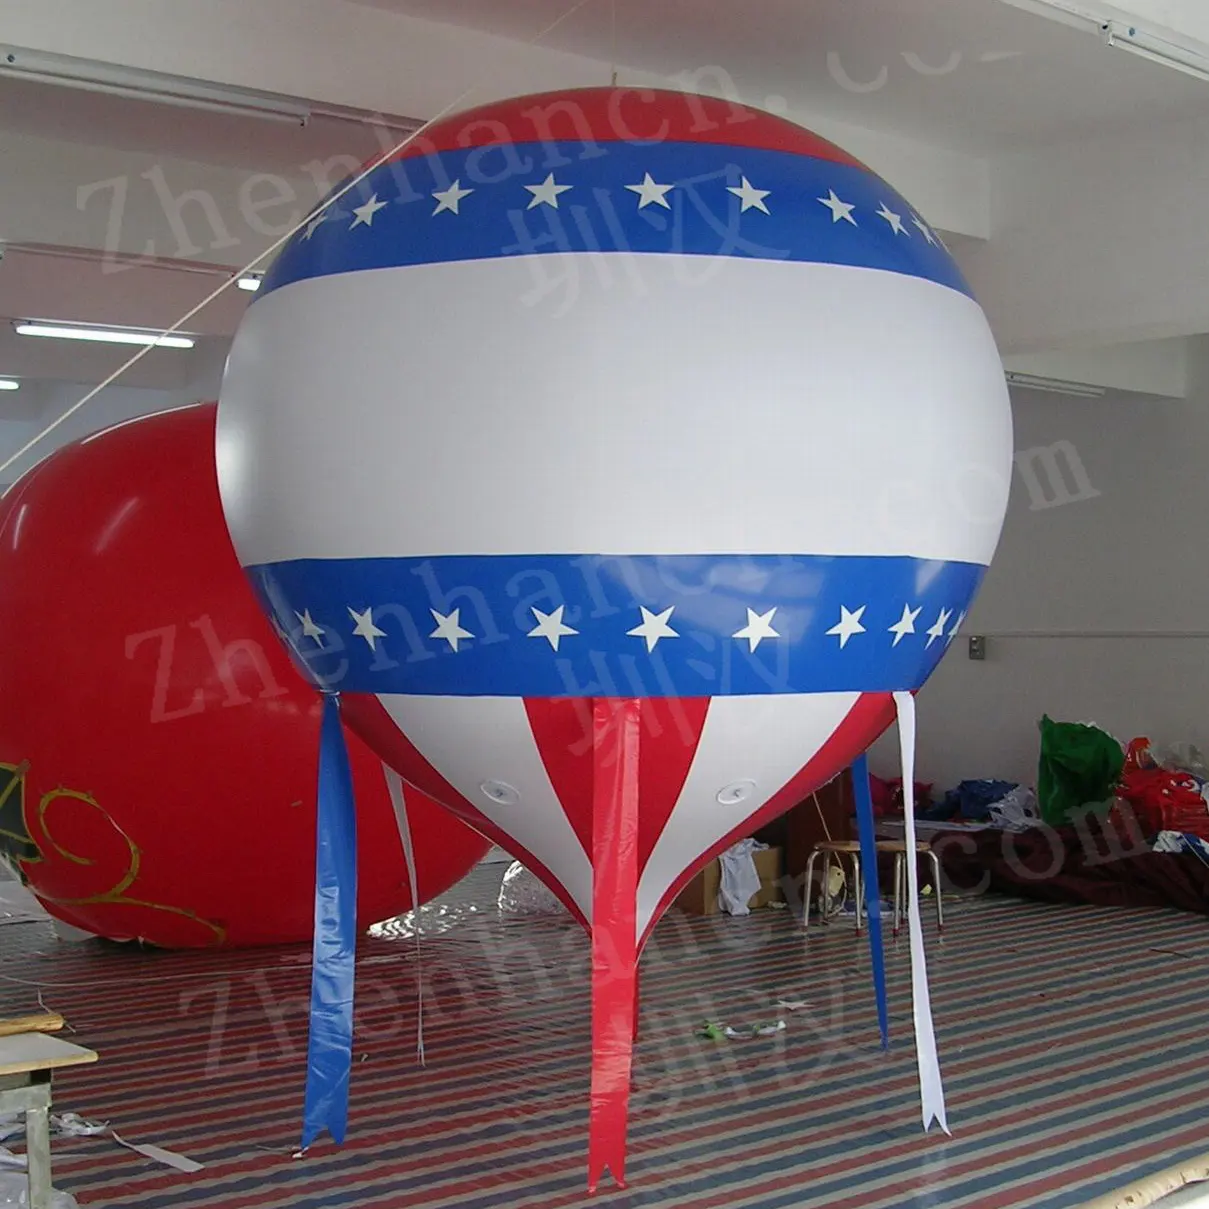 Aero dev karnaval helyum balon şişme sıcak hava balon özel reklam şişme geçit balon